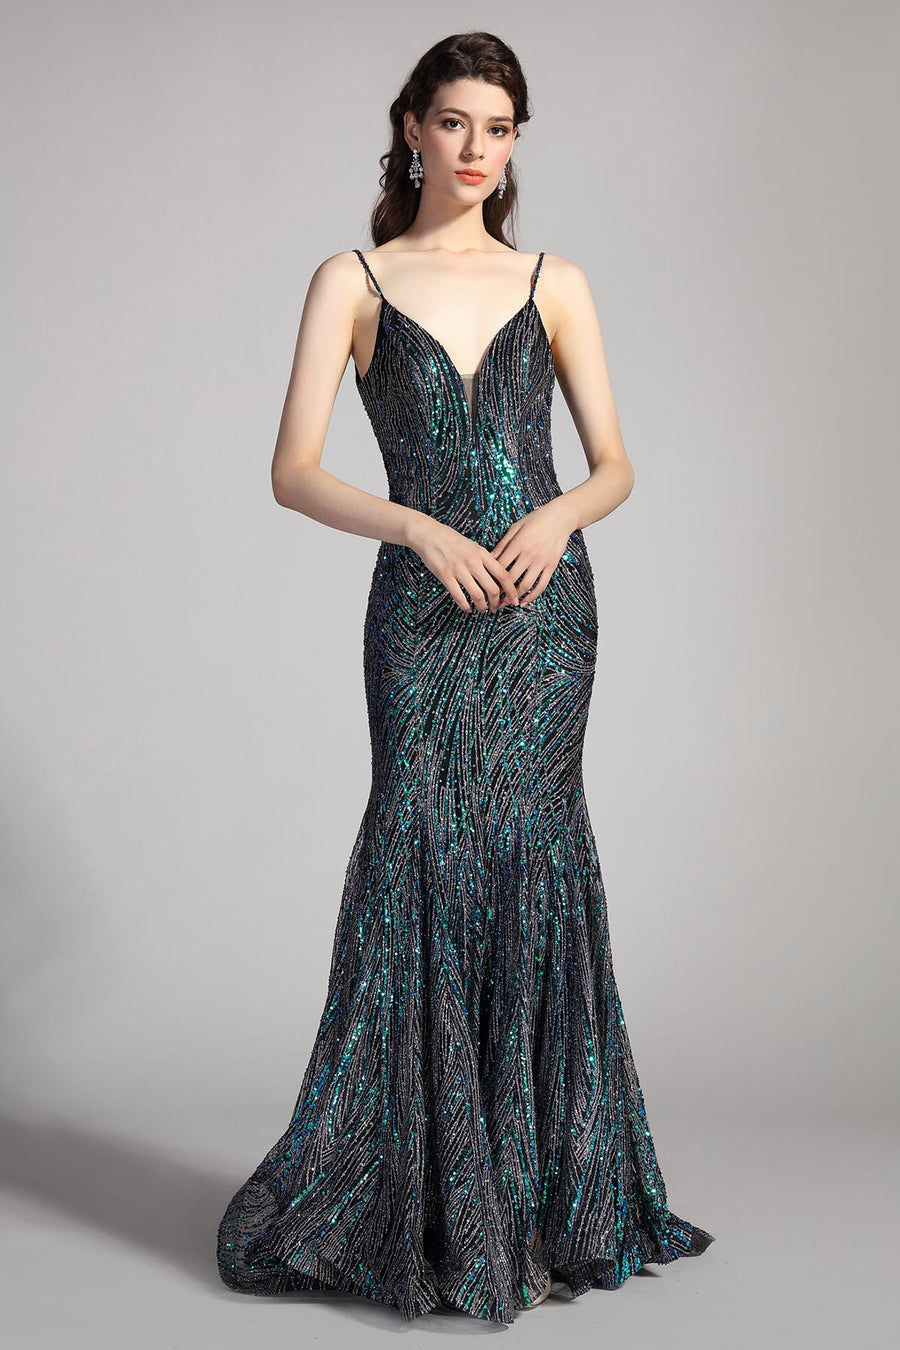 Mermaid/Trumpet V-neck Sleeveless Full Length Sequined Promo Dresses